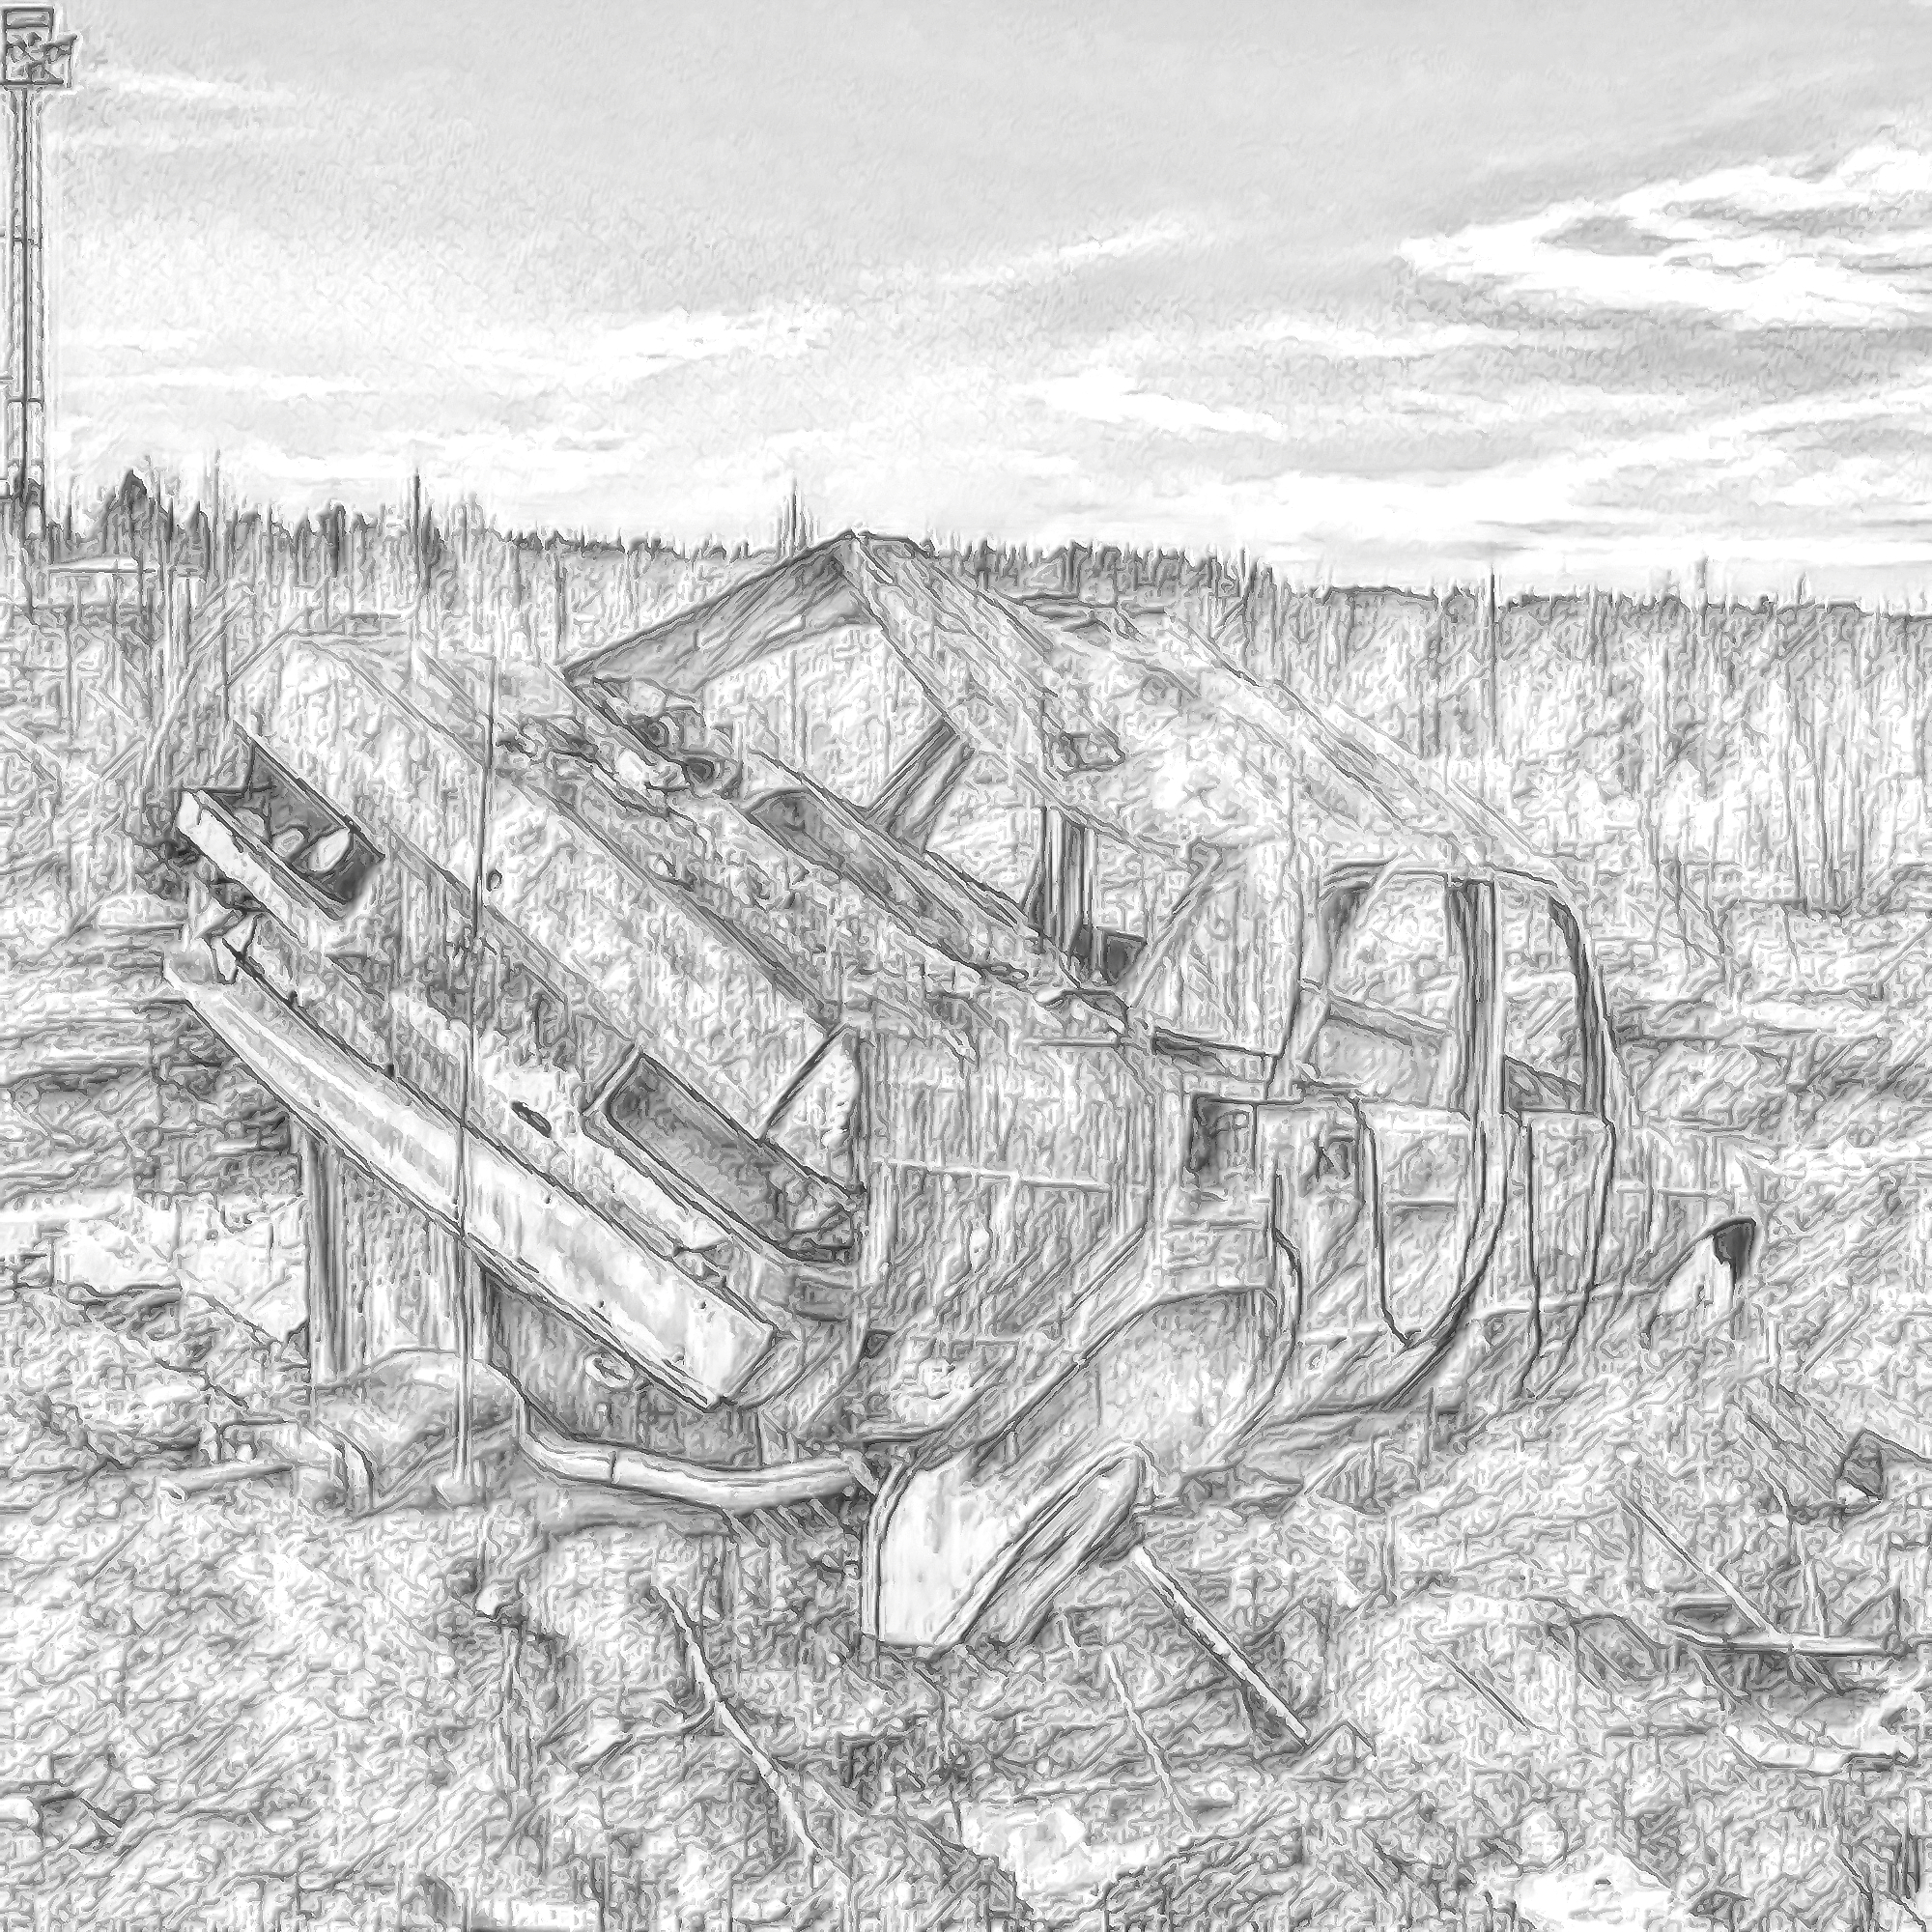 無料壁紙 背景画像素材 廃棄された車と瓦礫と寂しい夕日空 Free Illustlation くりえいてぃぶ